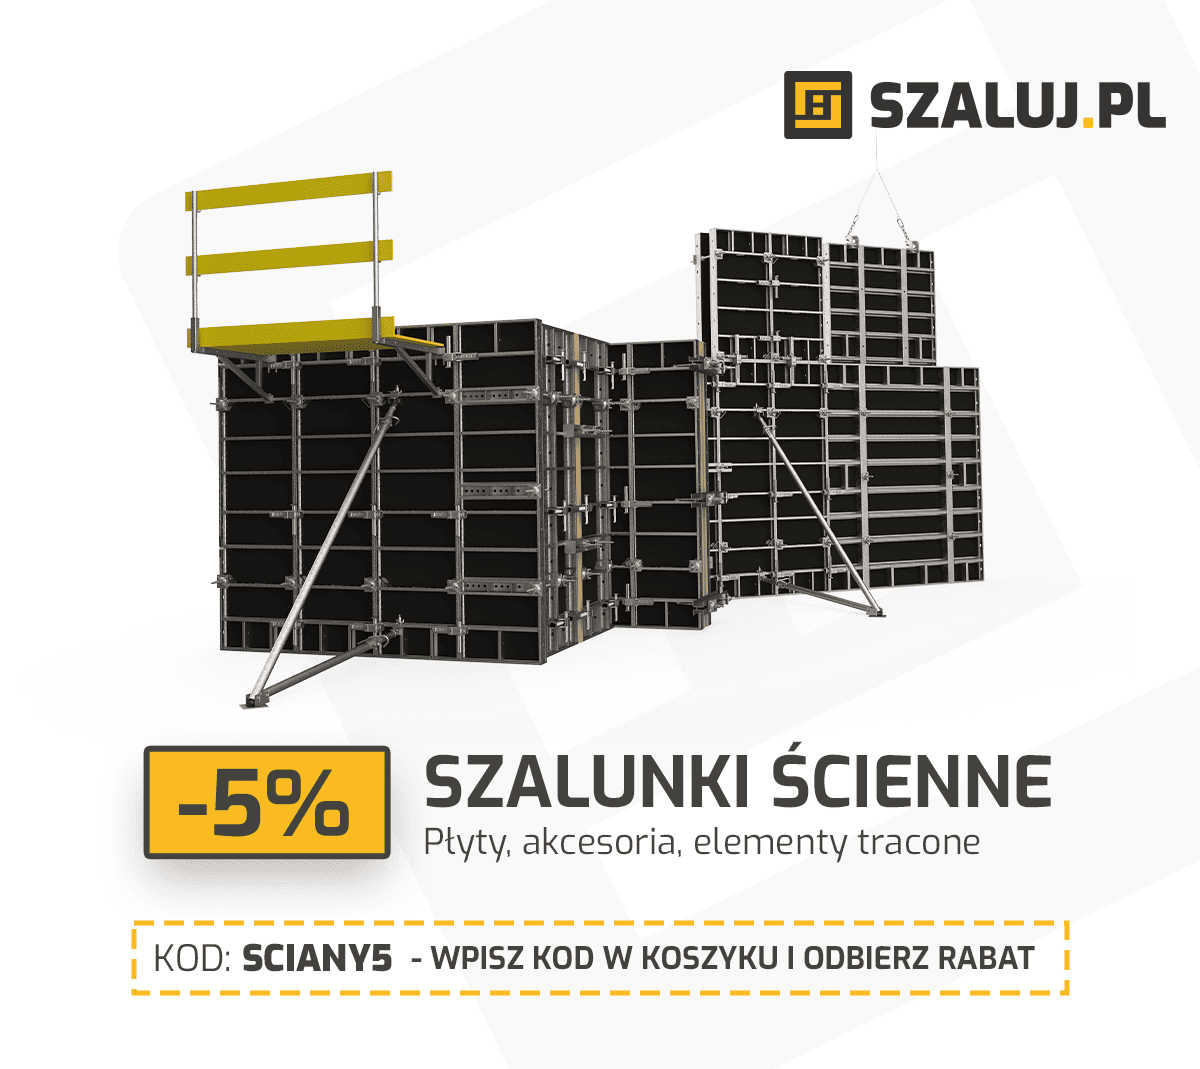 Szalunki ścienne w promocji 5% - szaluj.pl